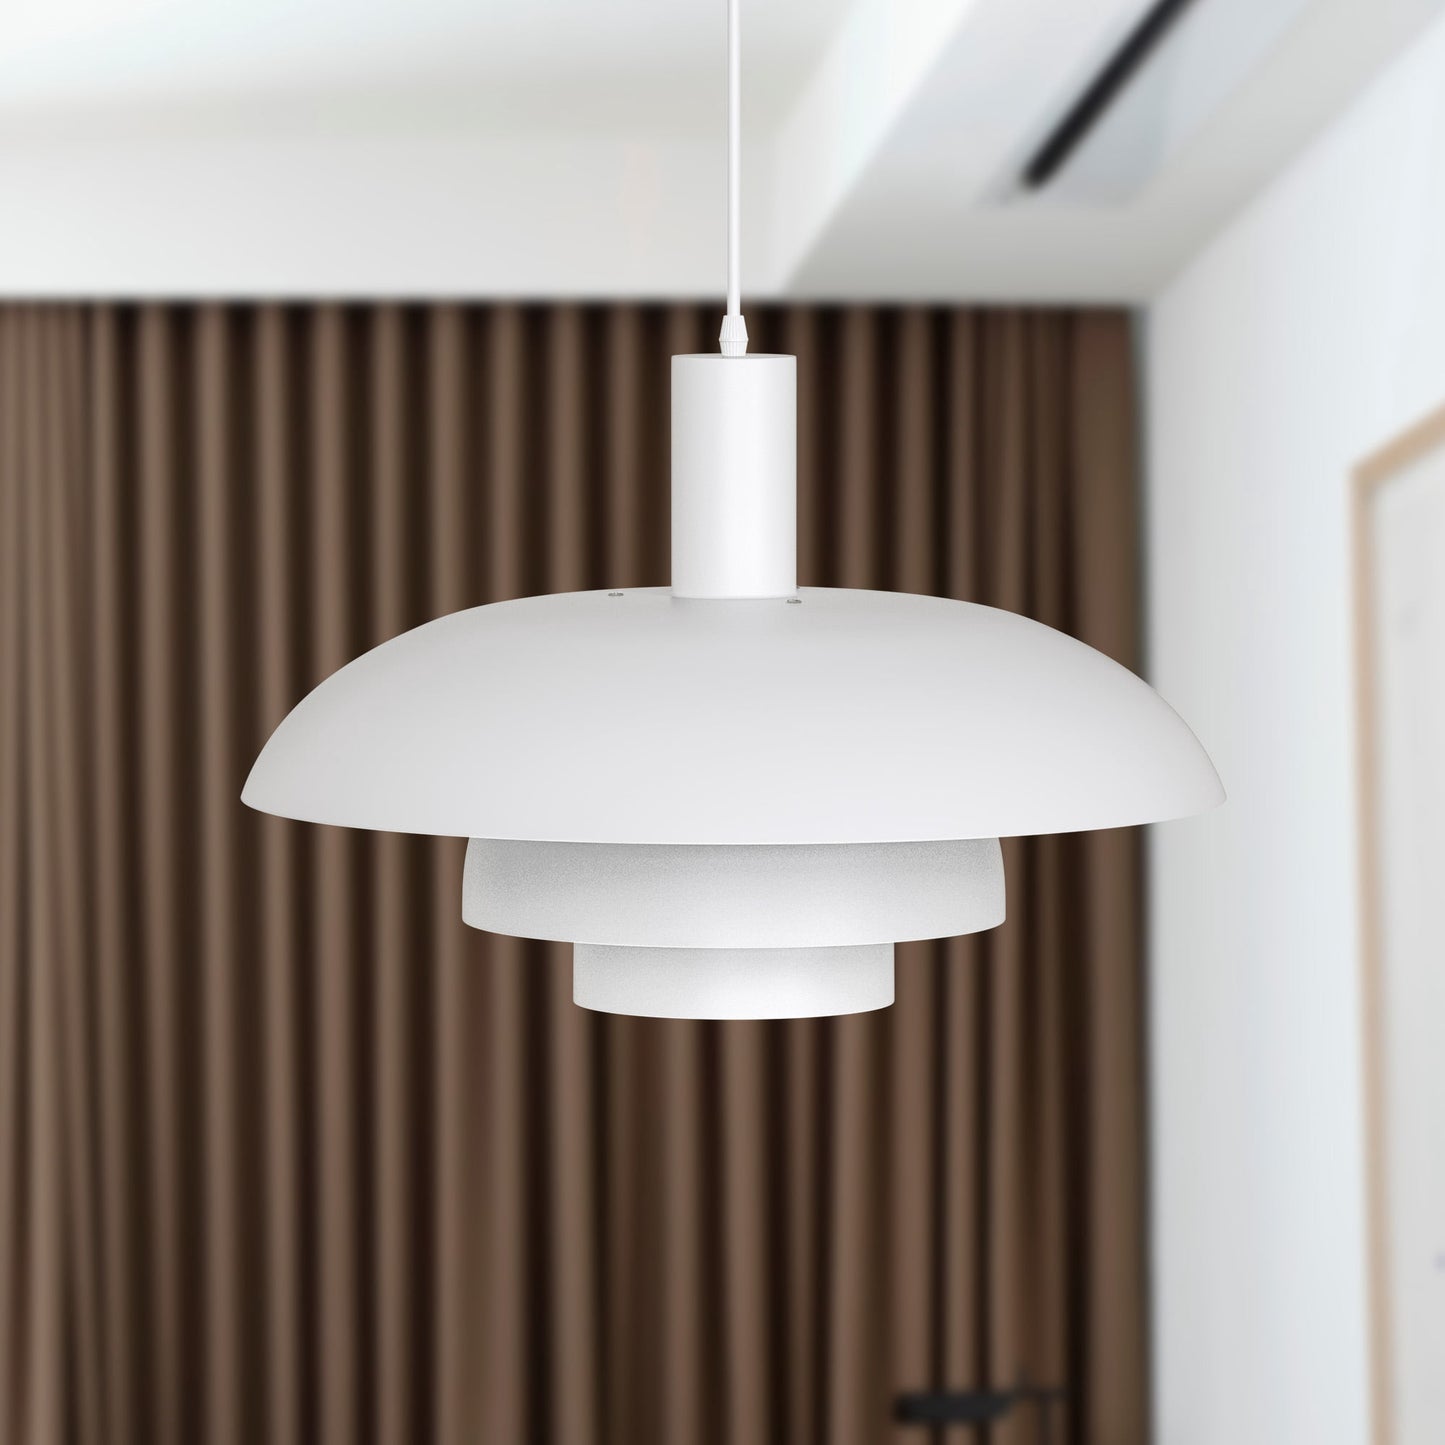 19.68 in.White Pendant Light Hanging Lamp Modern Aluminum Ceiling Light for Living Room Bedroom Restaurant Leisure Bar Loft